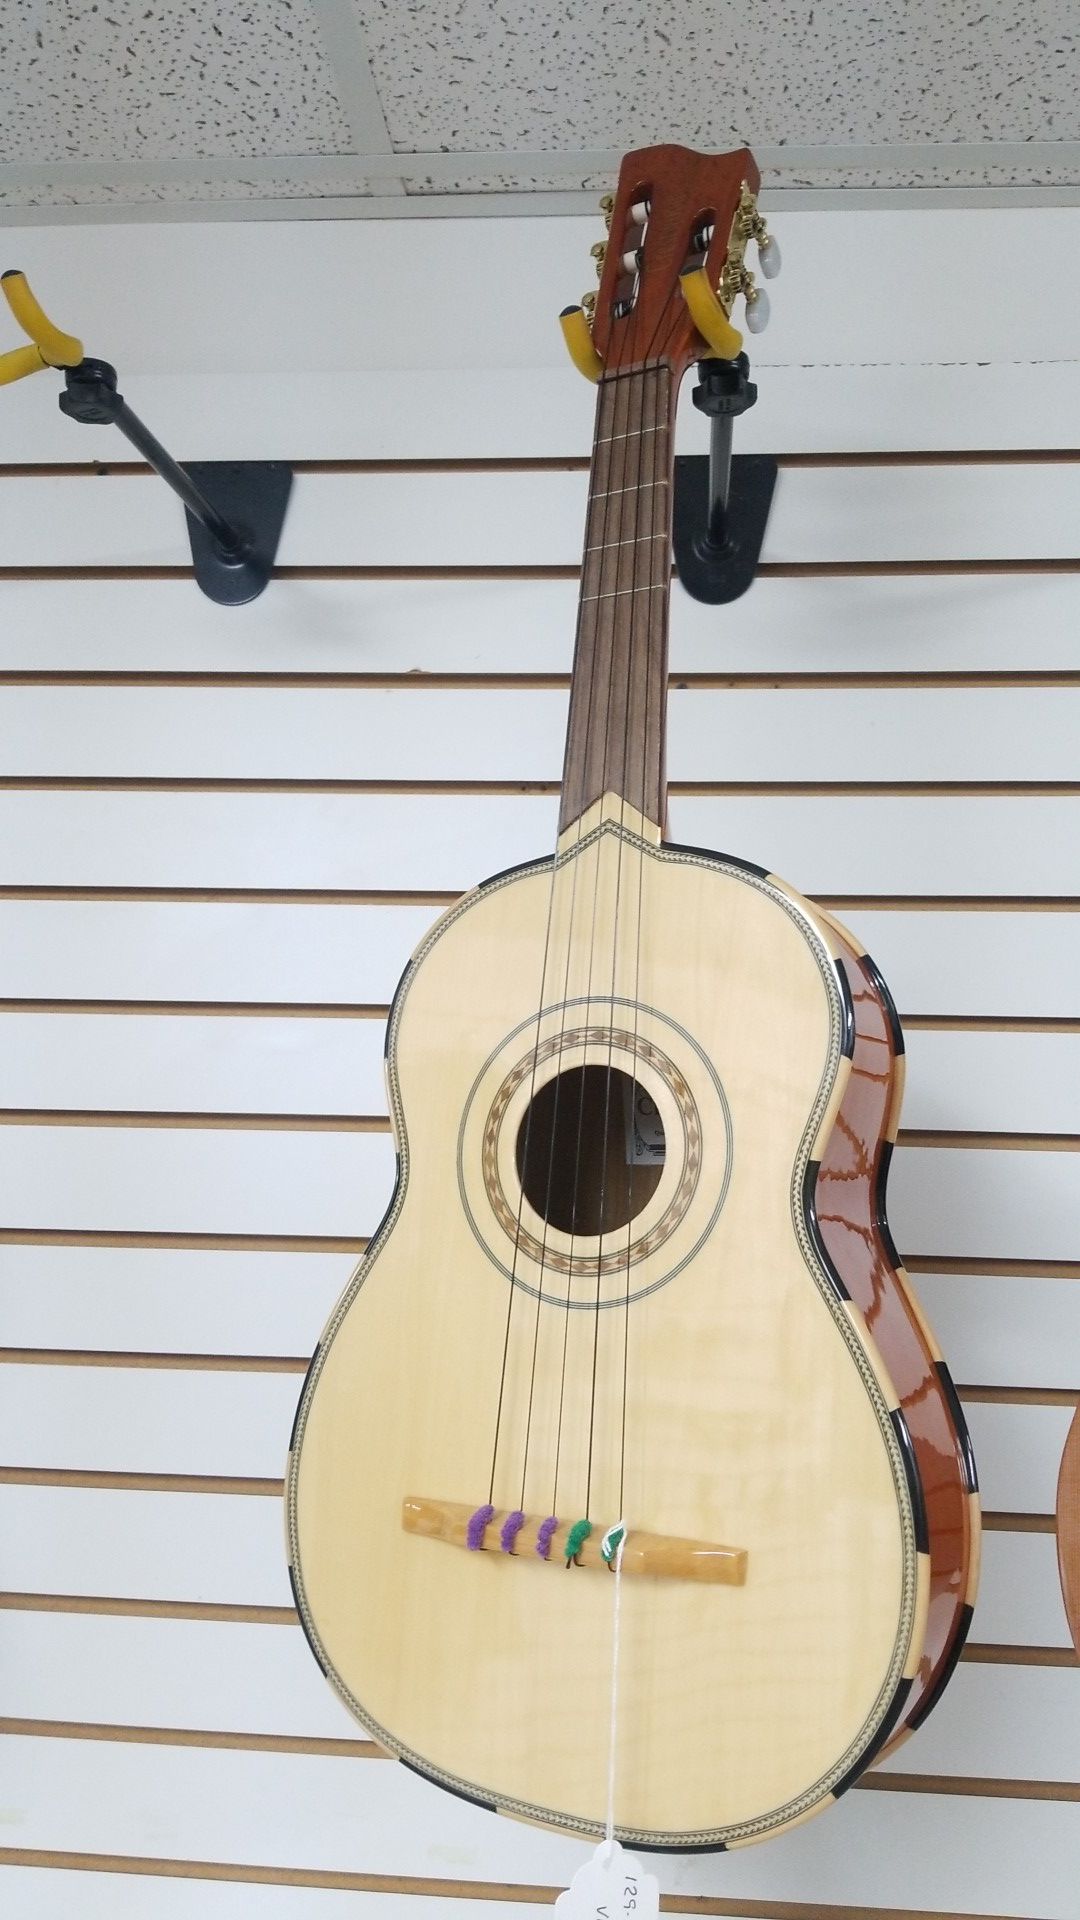 Tampico Vihuela Guitar